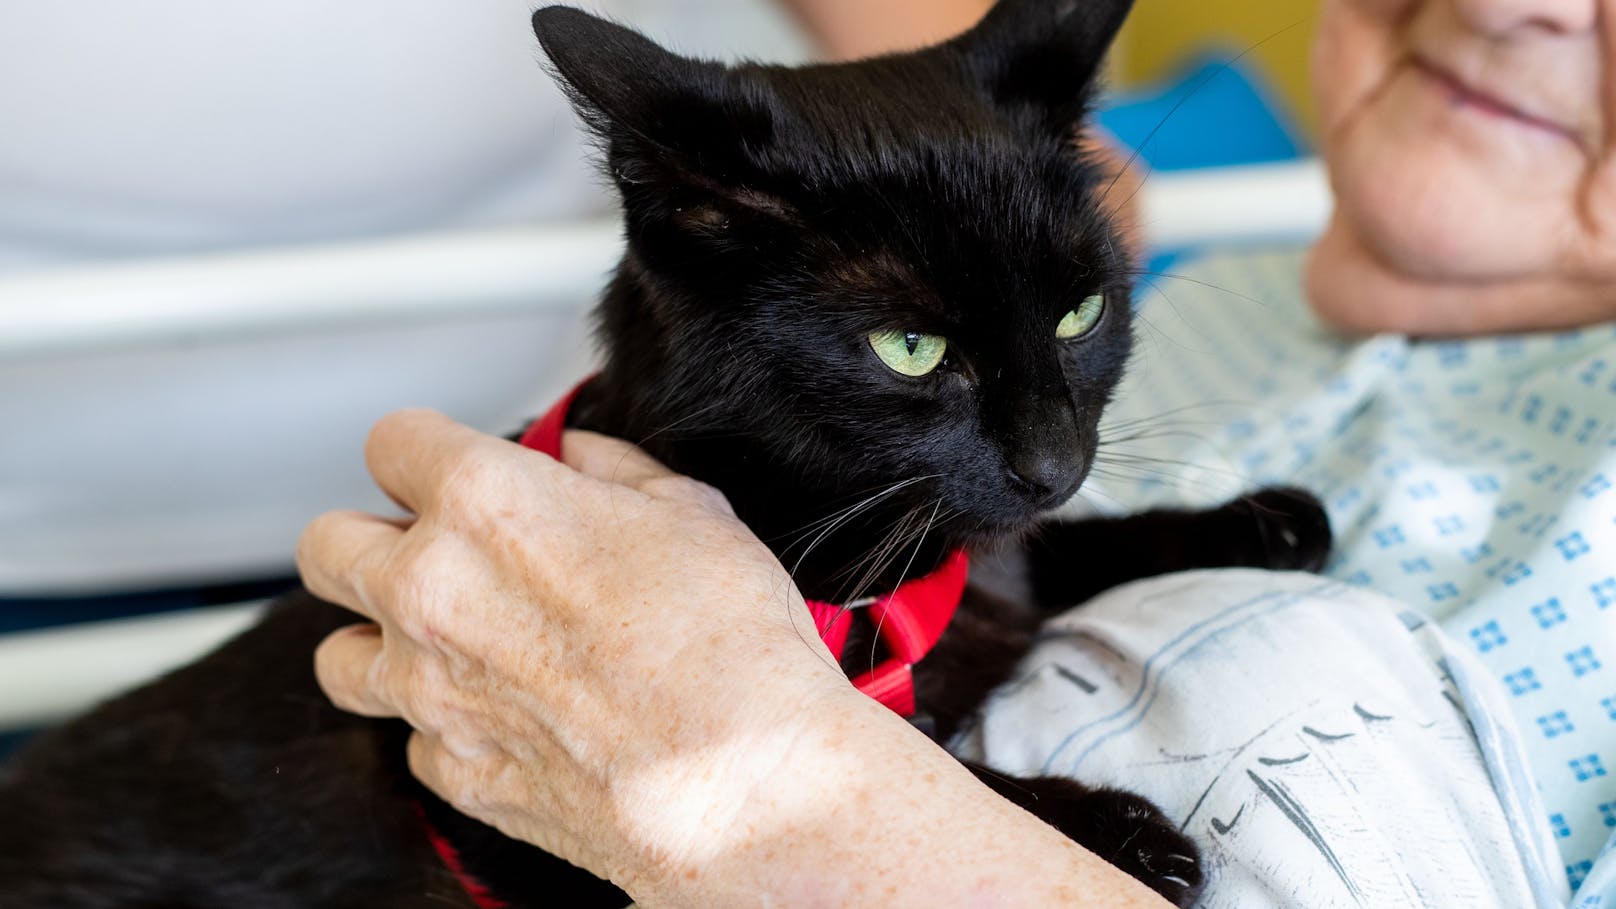 "Felinotherapie" – Die Katze gegen Depression & Co